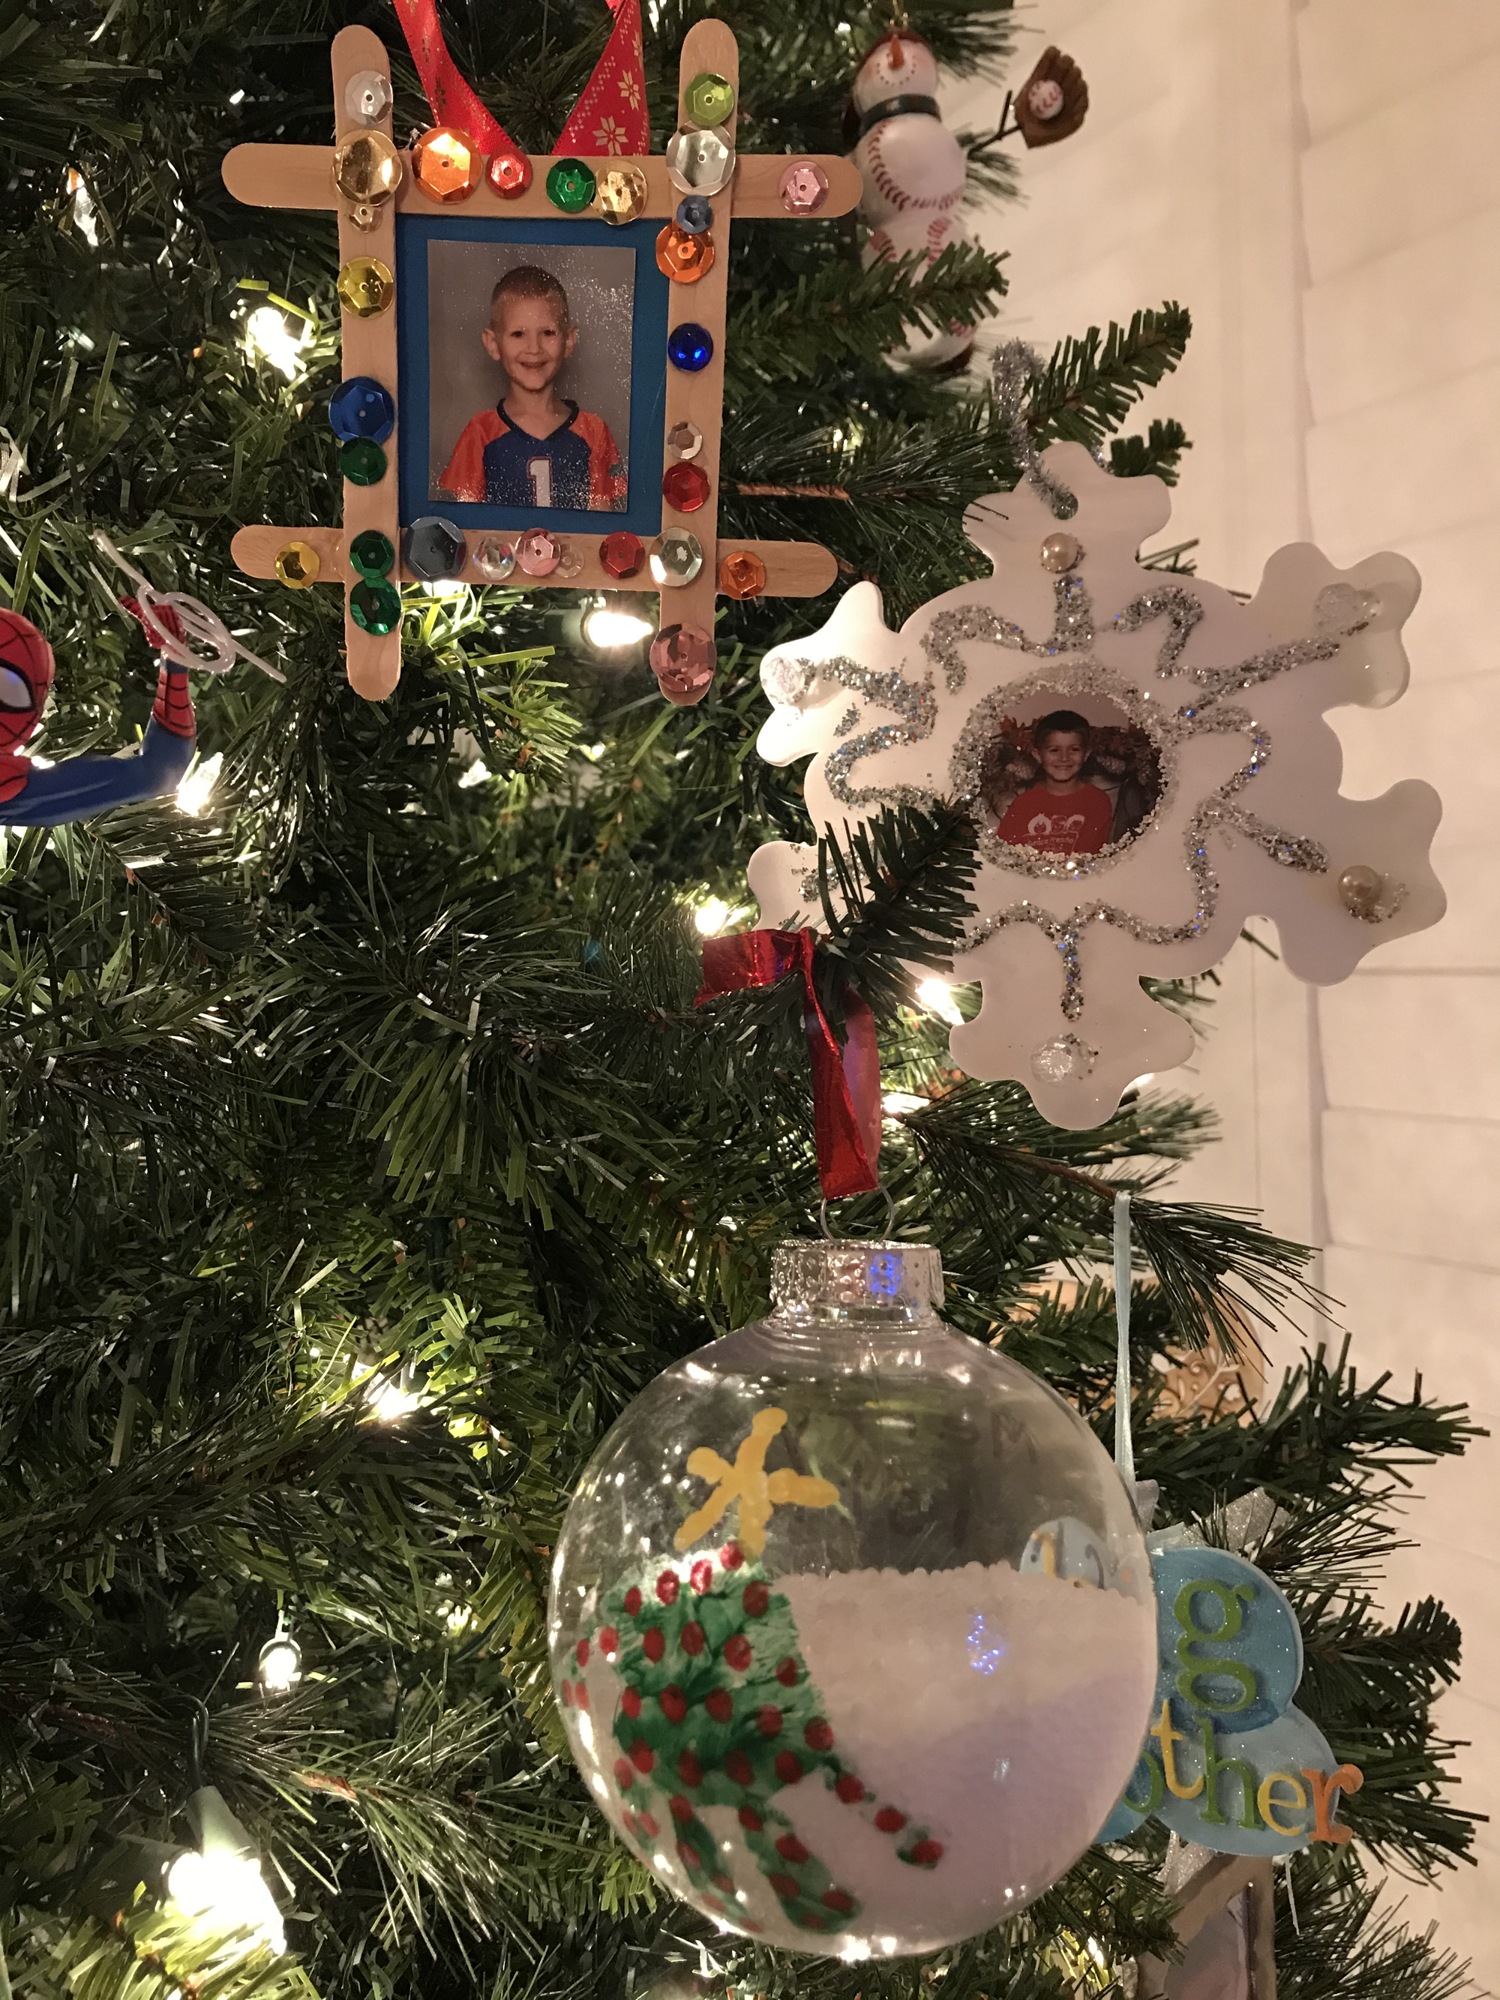 Handmade ornaments from Tina Adams' family. 